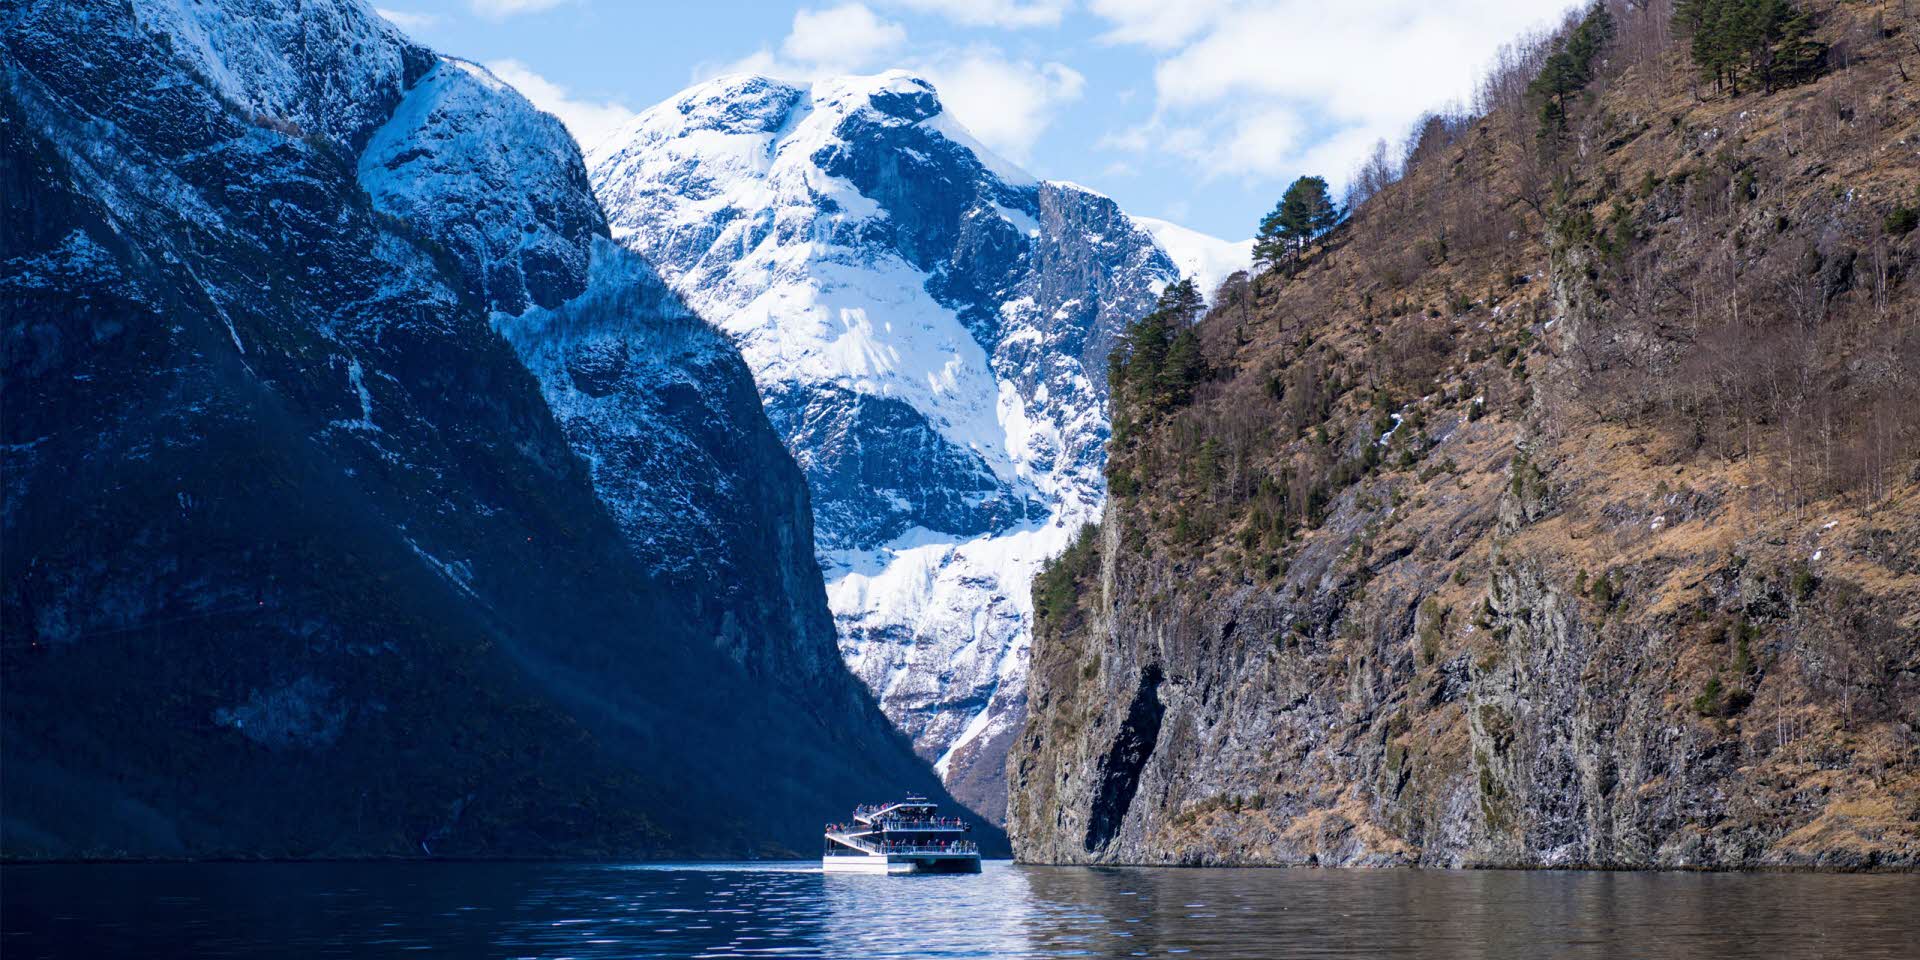 Le bateau Future of the Fjords naviguant dans le Nærøyfjord en fin d’hiver avec des montagnes enneigées et des personnes debout sur le pont